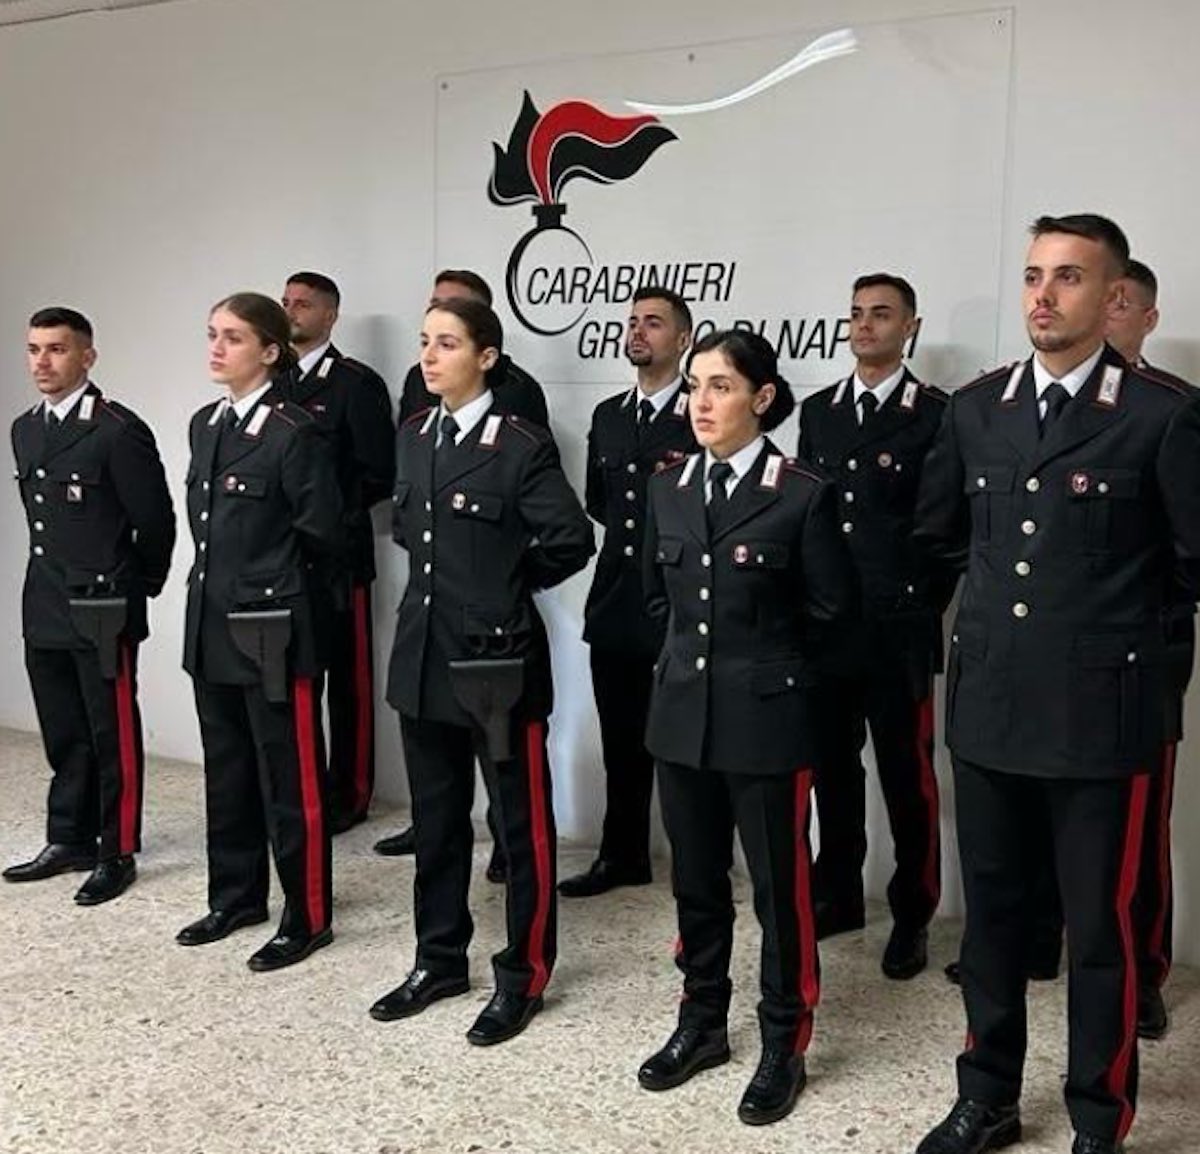 Nuove reclute per la sicurezza: Napoli accoglie 70 carabinieri